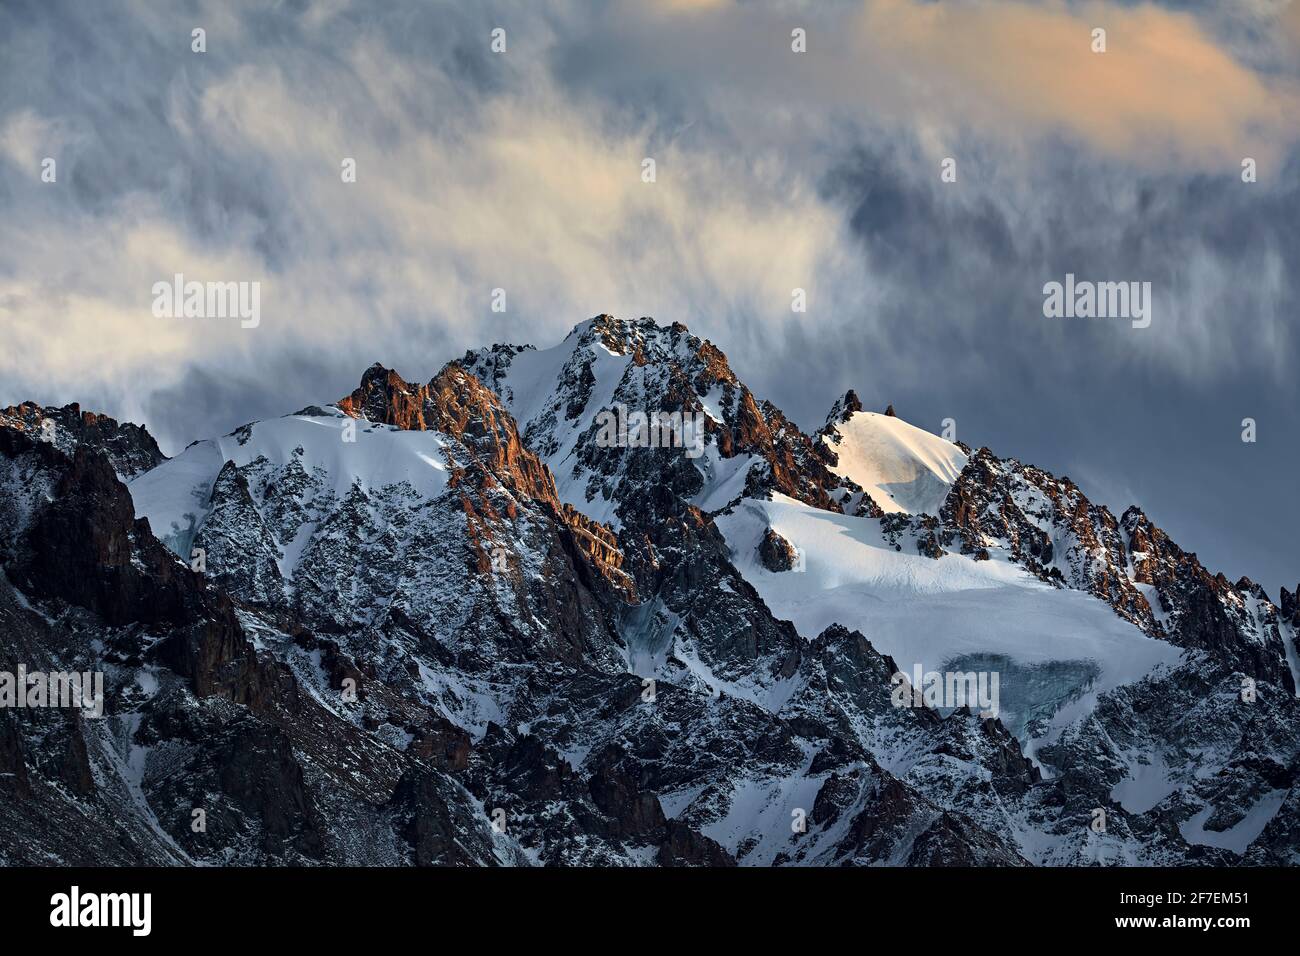 Magnifique paysage de la montagne sommet avec glacier et neige à Almaty, Kazakhstan. Concept de randonnée et de plein air Banque D'Images